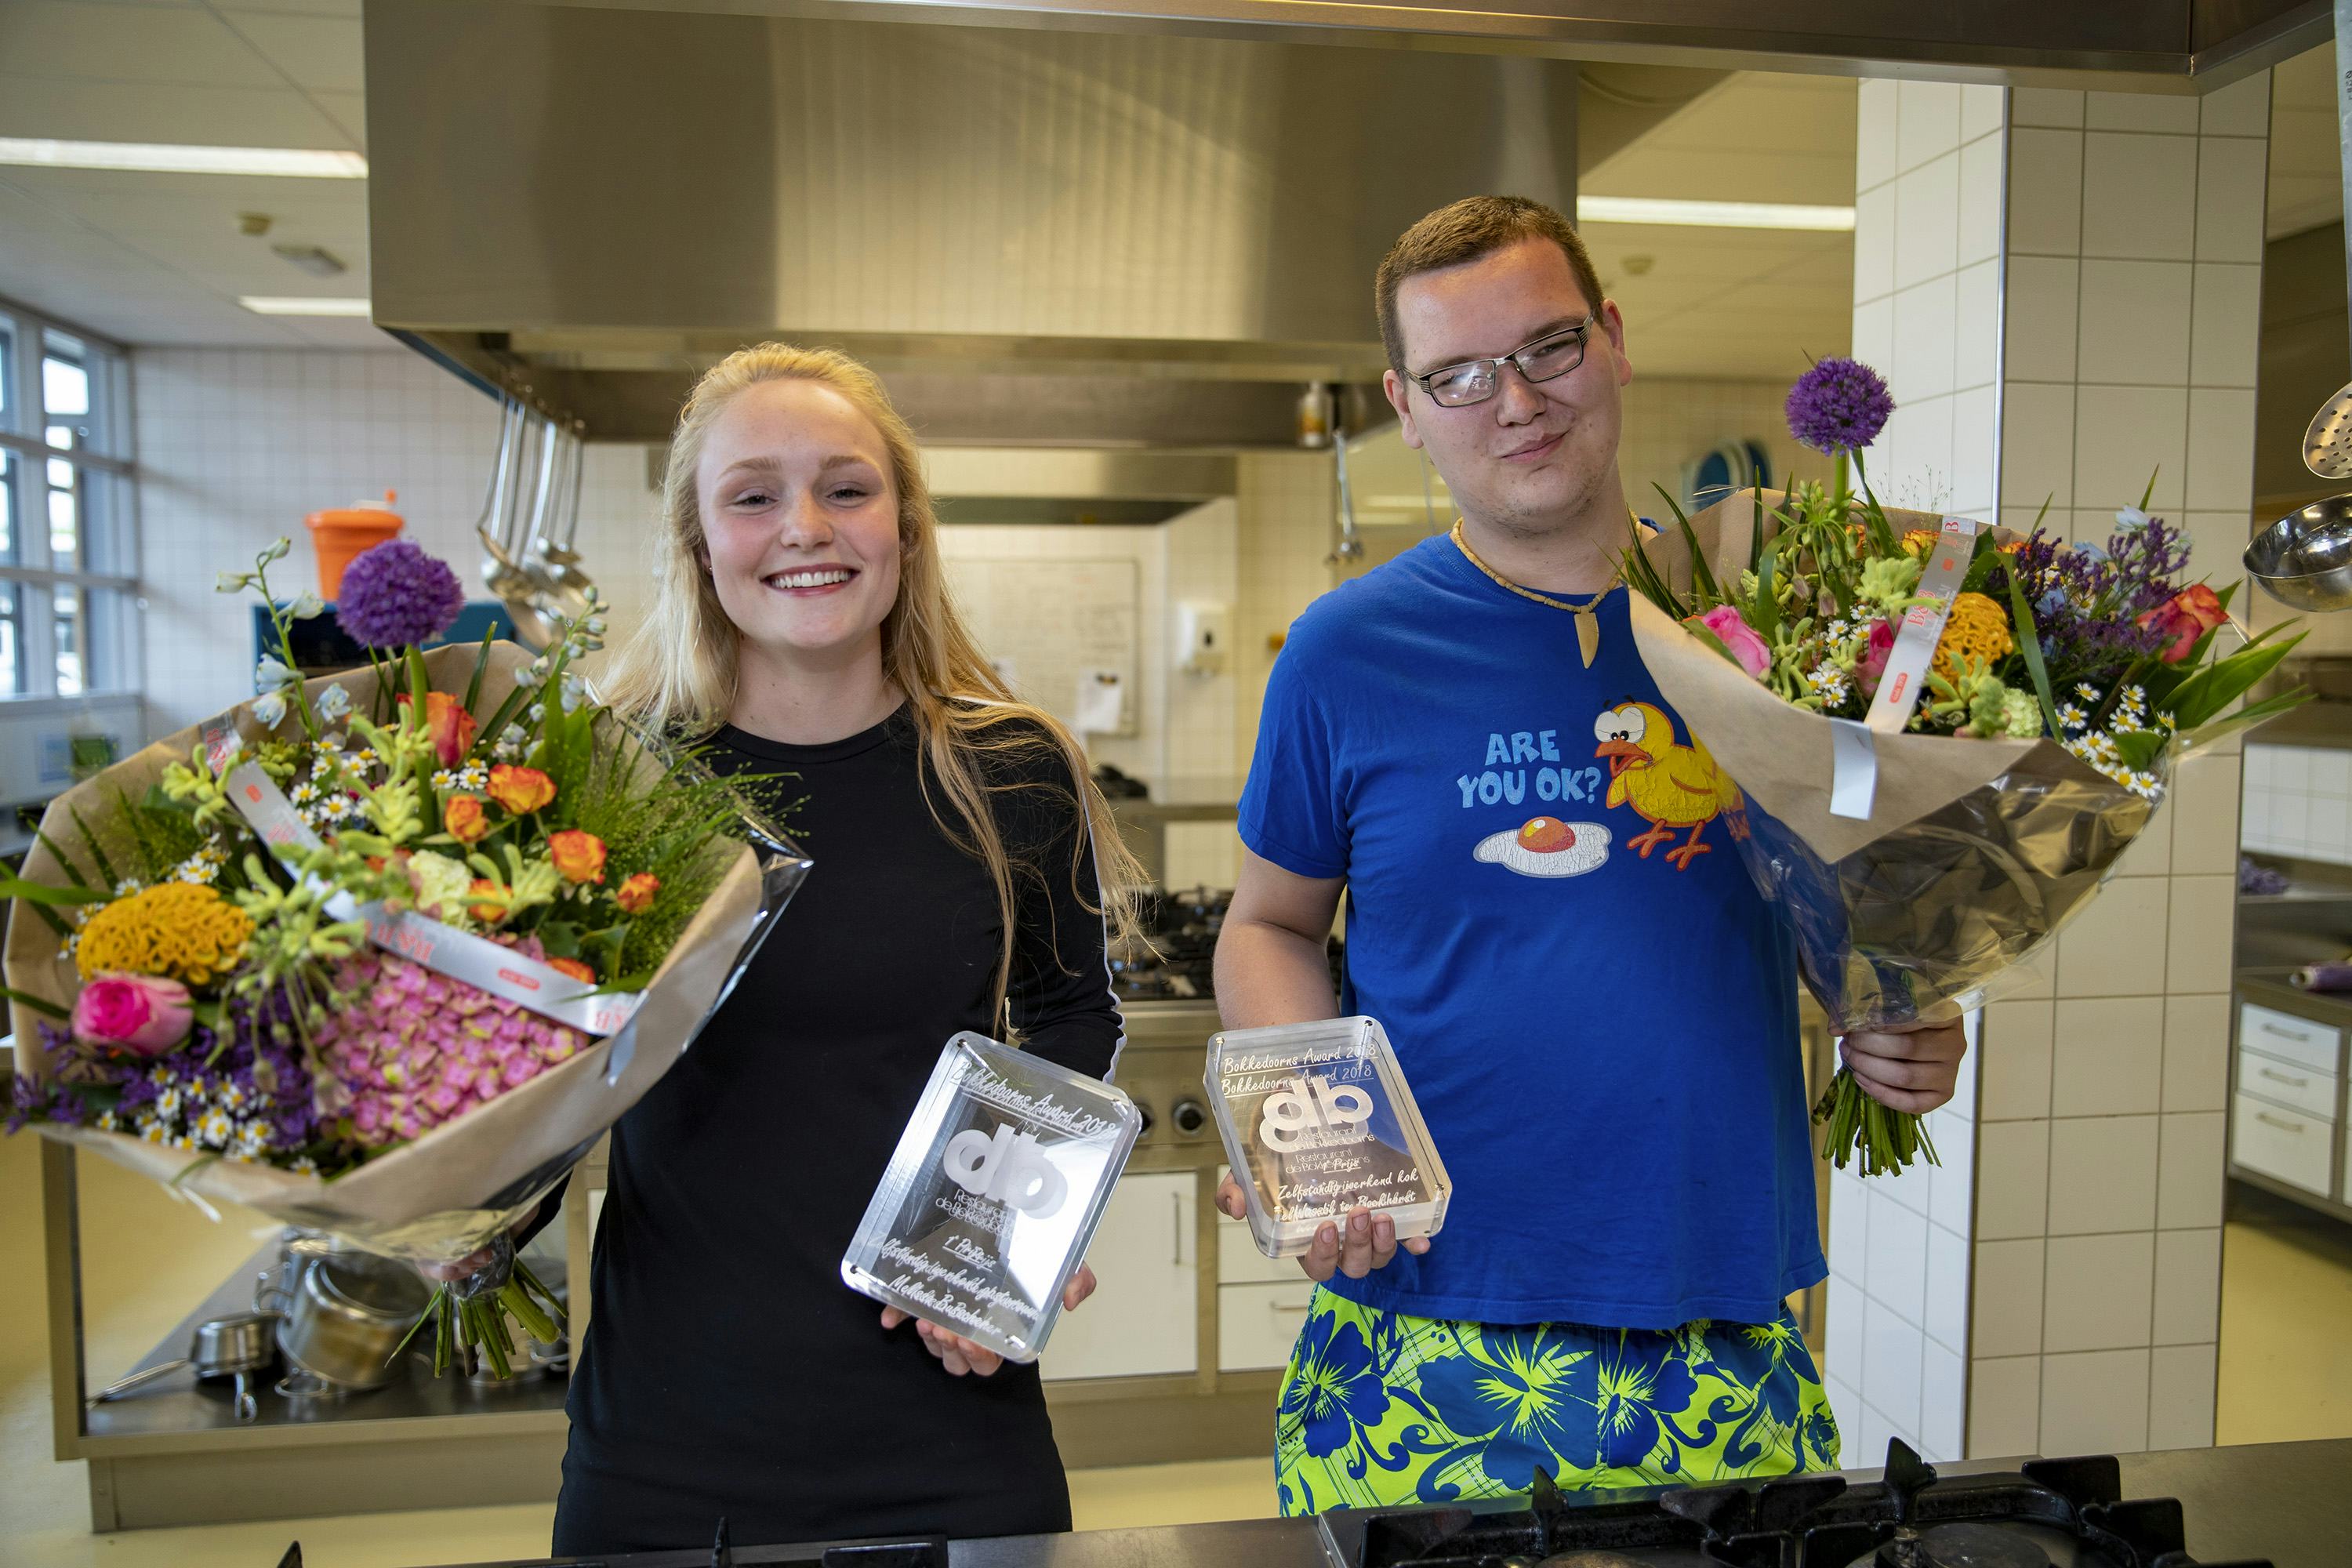 Bokkedoorns Award voor Wessel te Boekhorst en Melissa Buchsscher